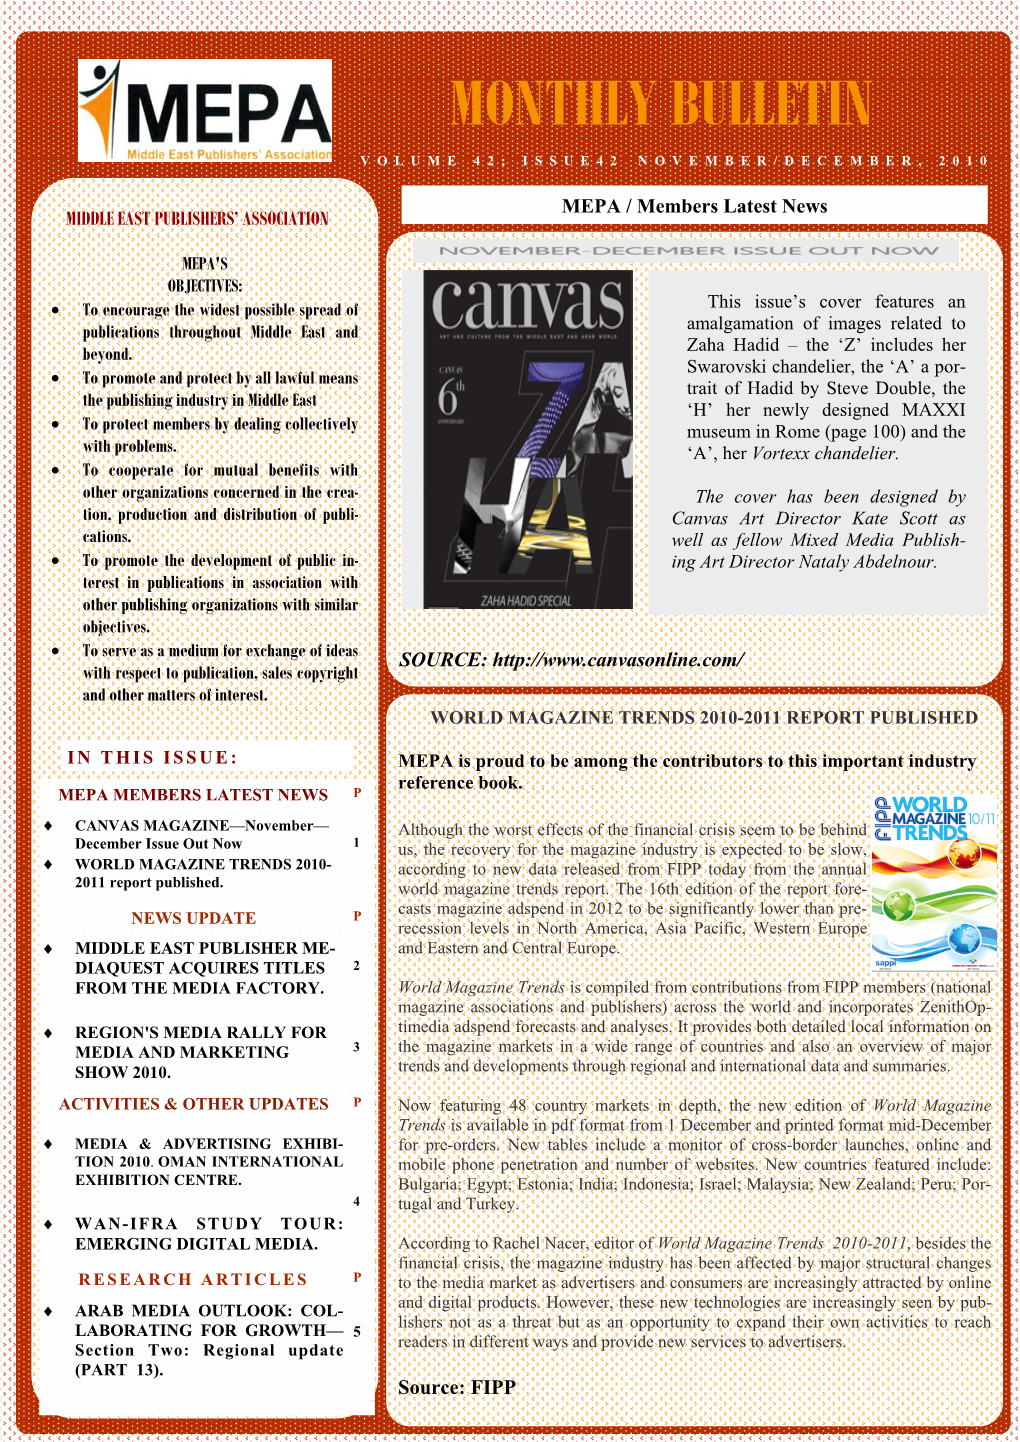 Monthly Bulletin Volume 42; Issue42 November/December, 2010